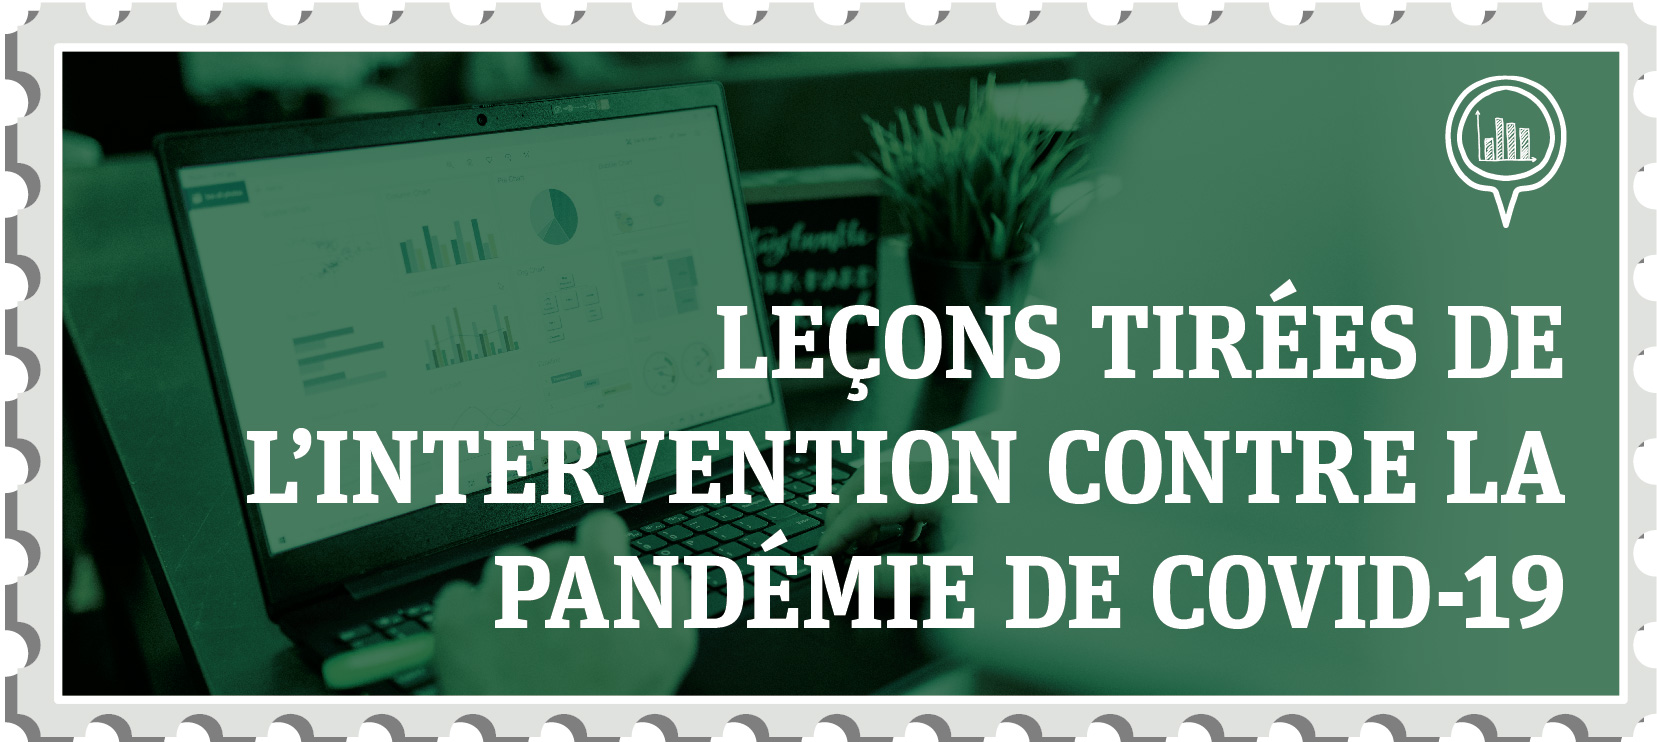 Leçons tirées de l’intervention contre la pandémie de COVID-19 